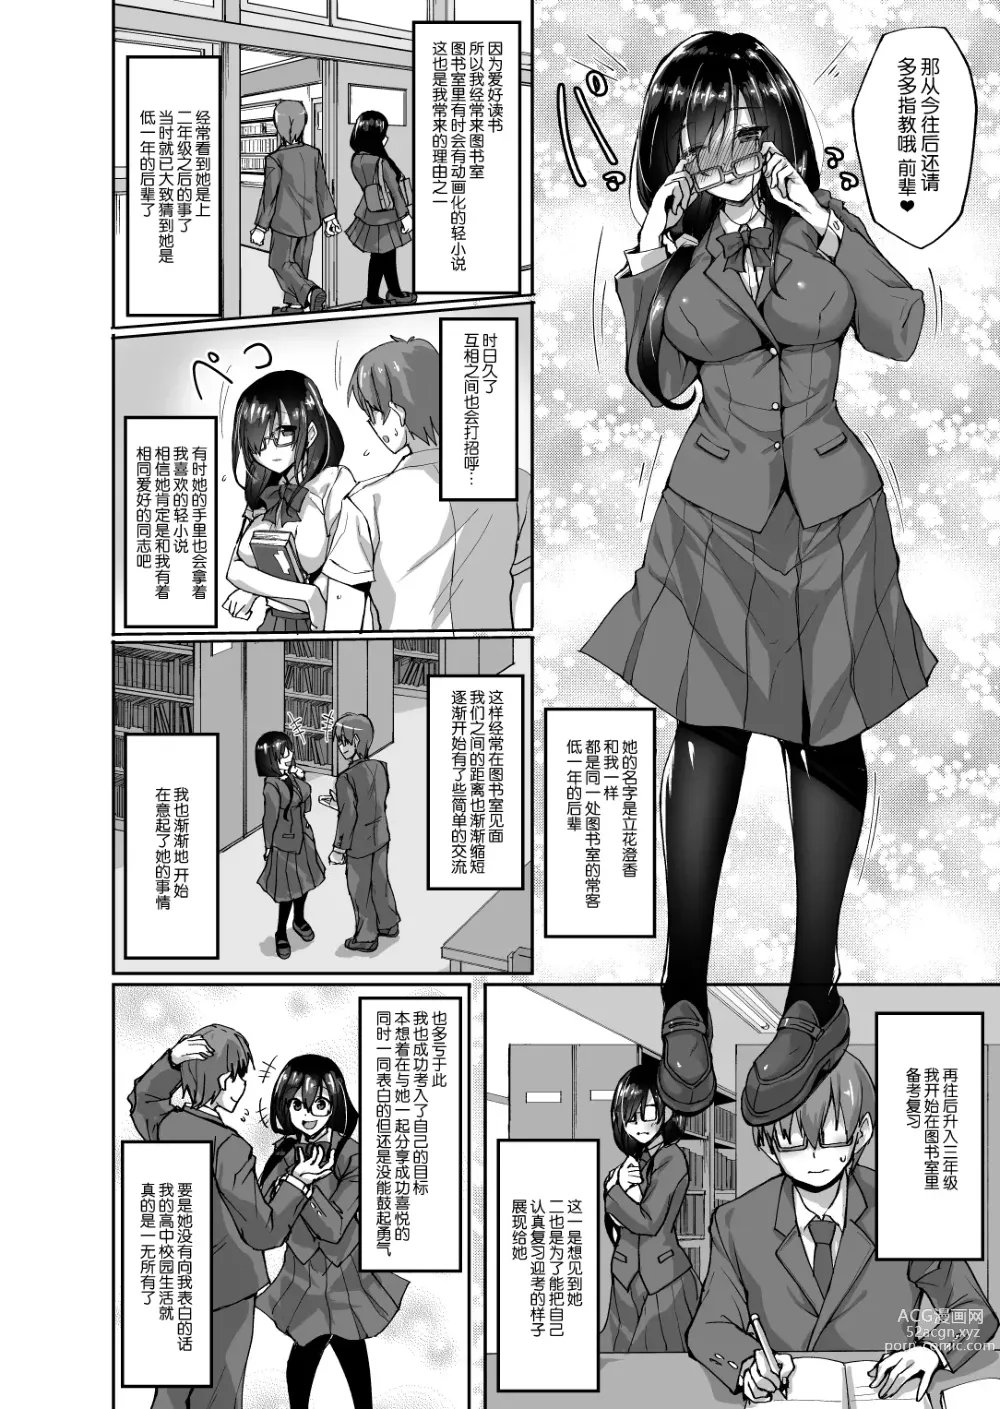 Page 9 of manga Netorare Kouhai Kanojo - underclass girlfriends NTR Story